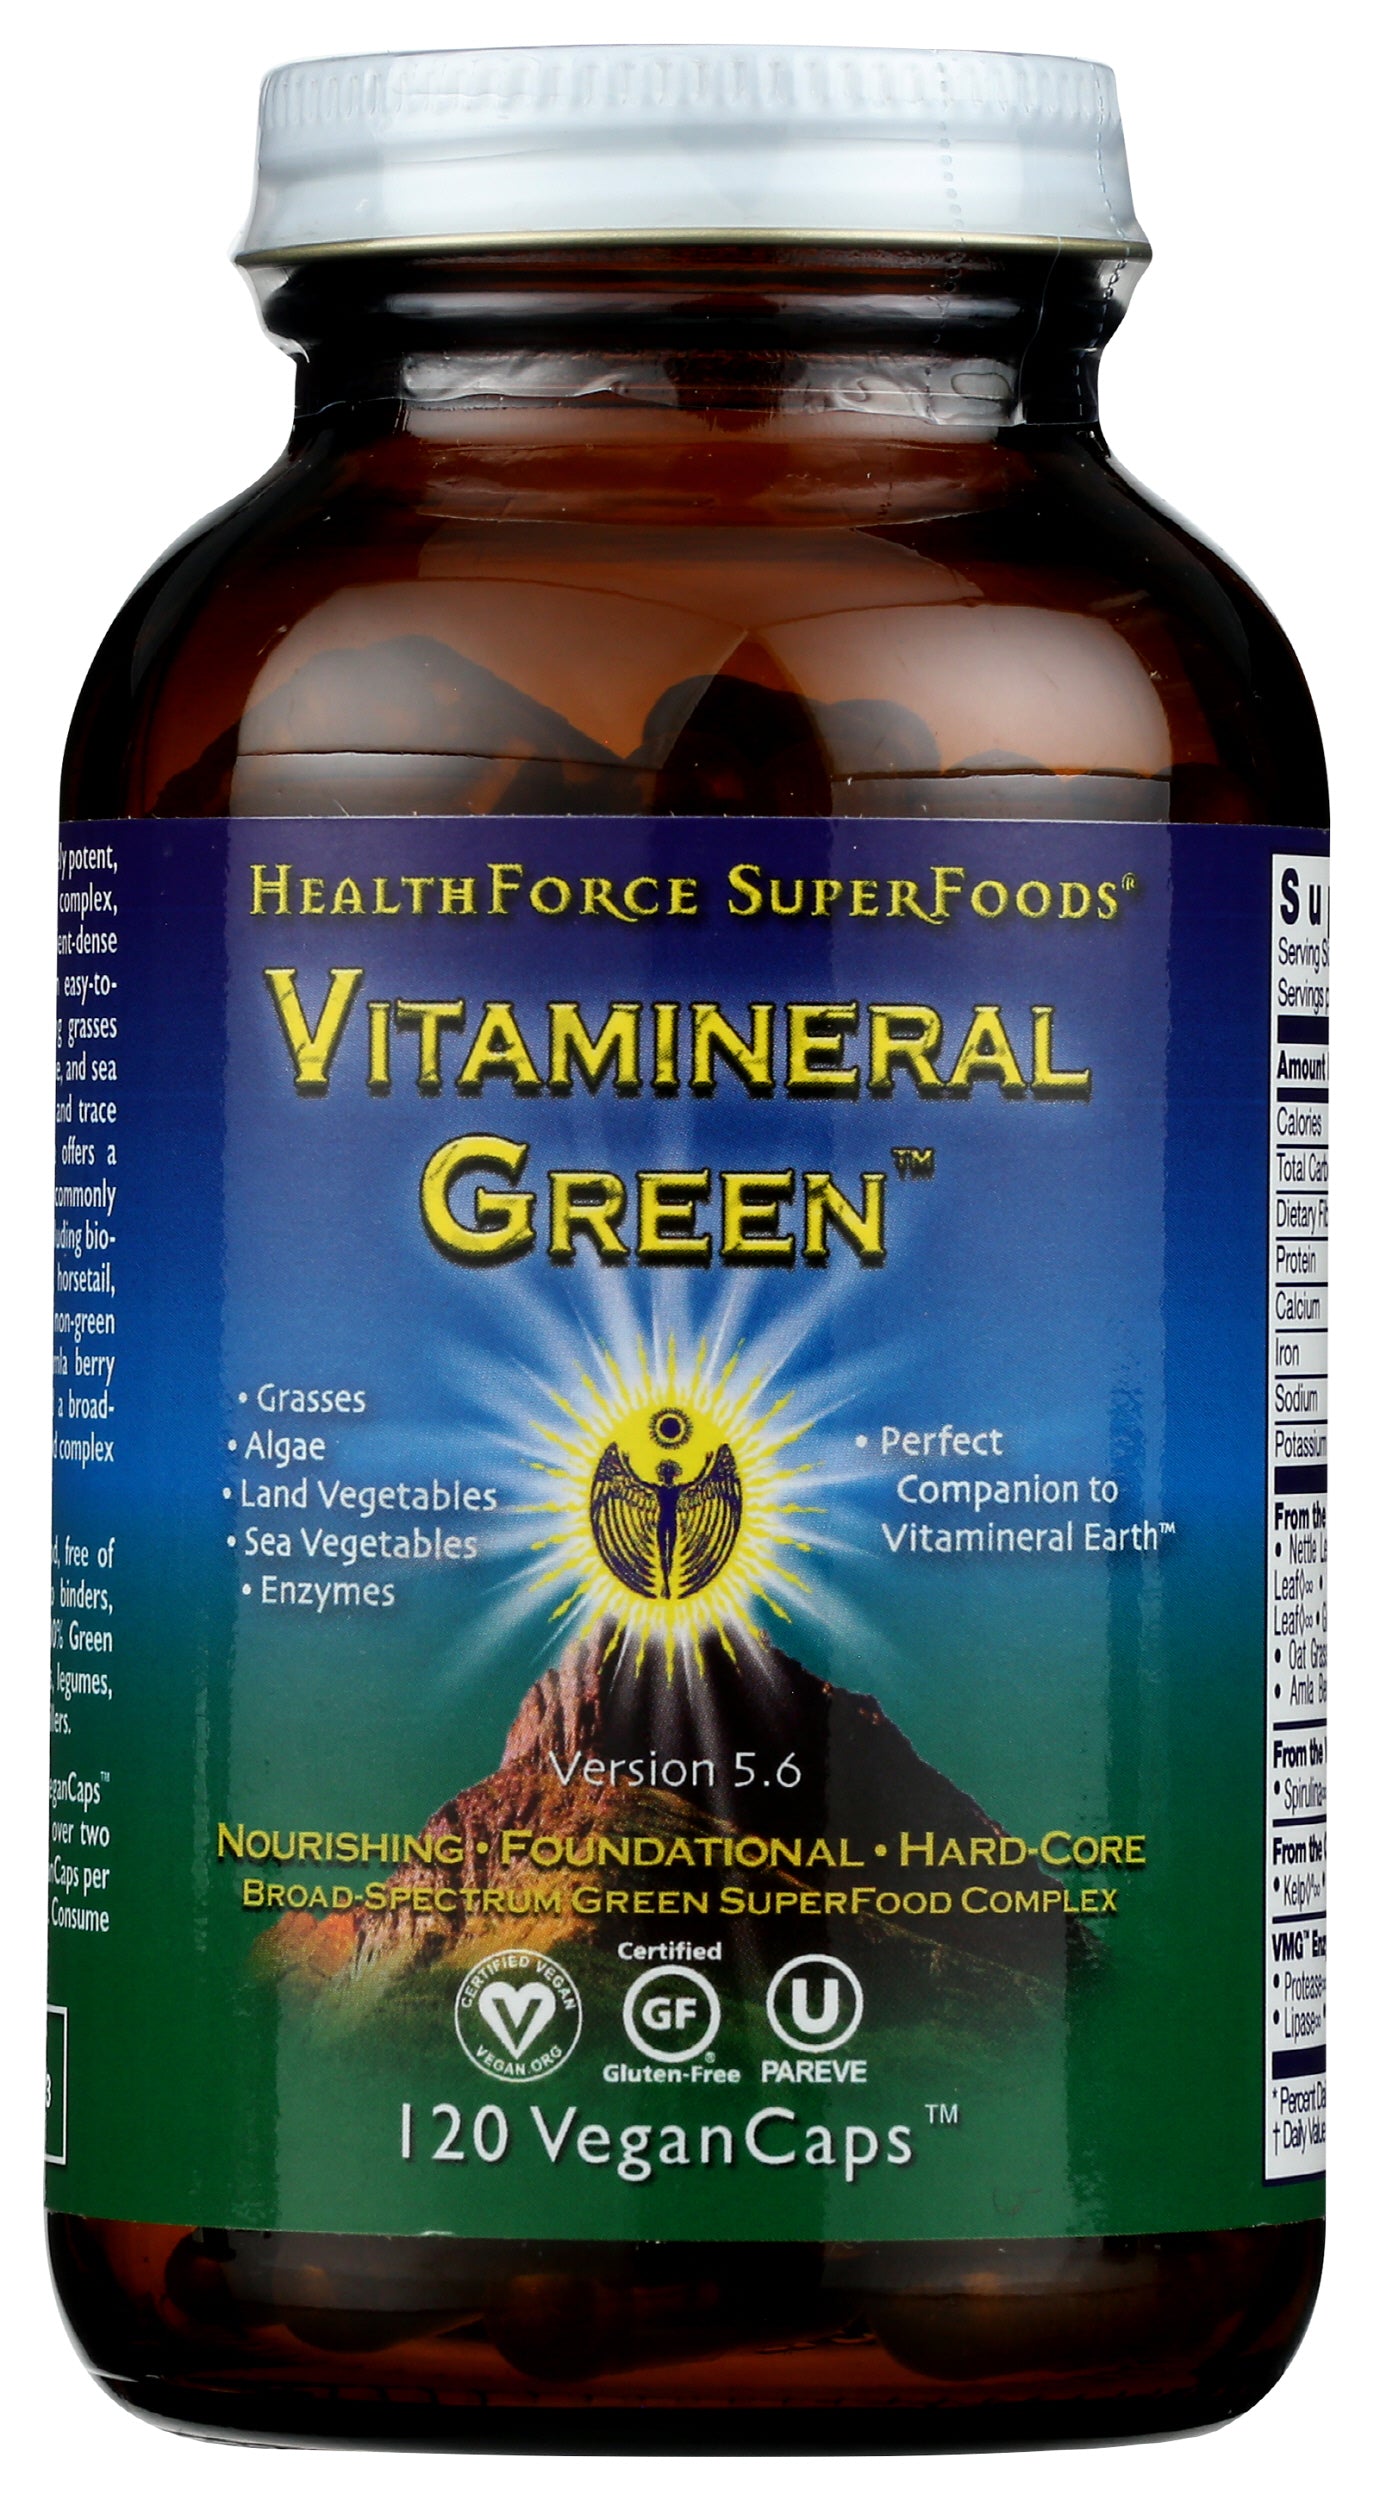 HealthForce SuperFoods Vitamineral Green 120 Vegan Caps Front of Bottle